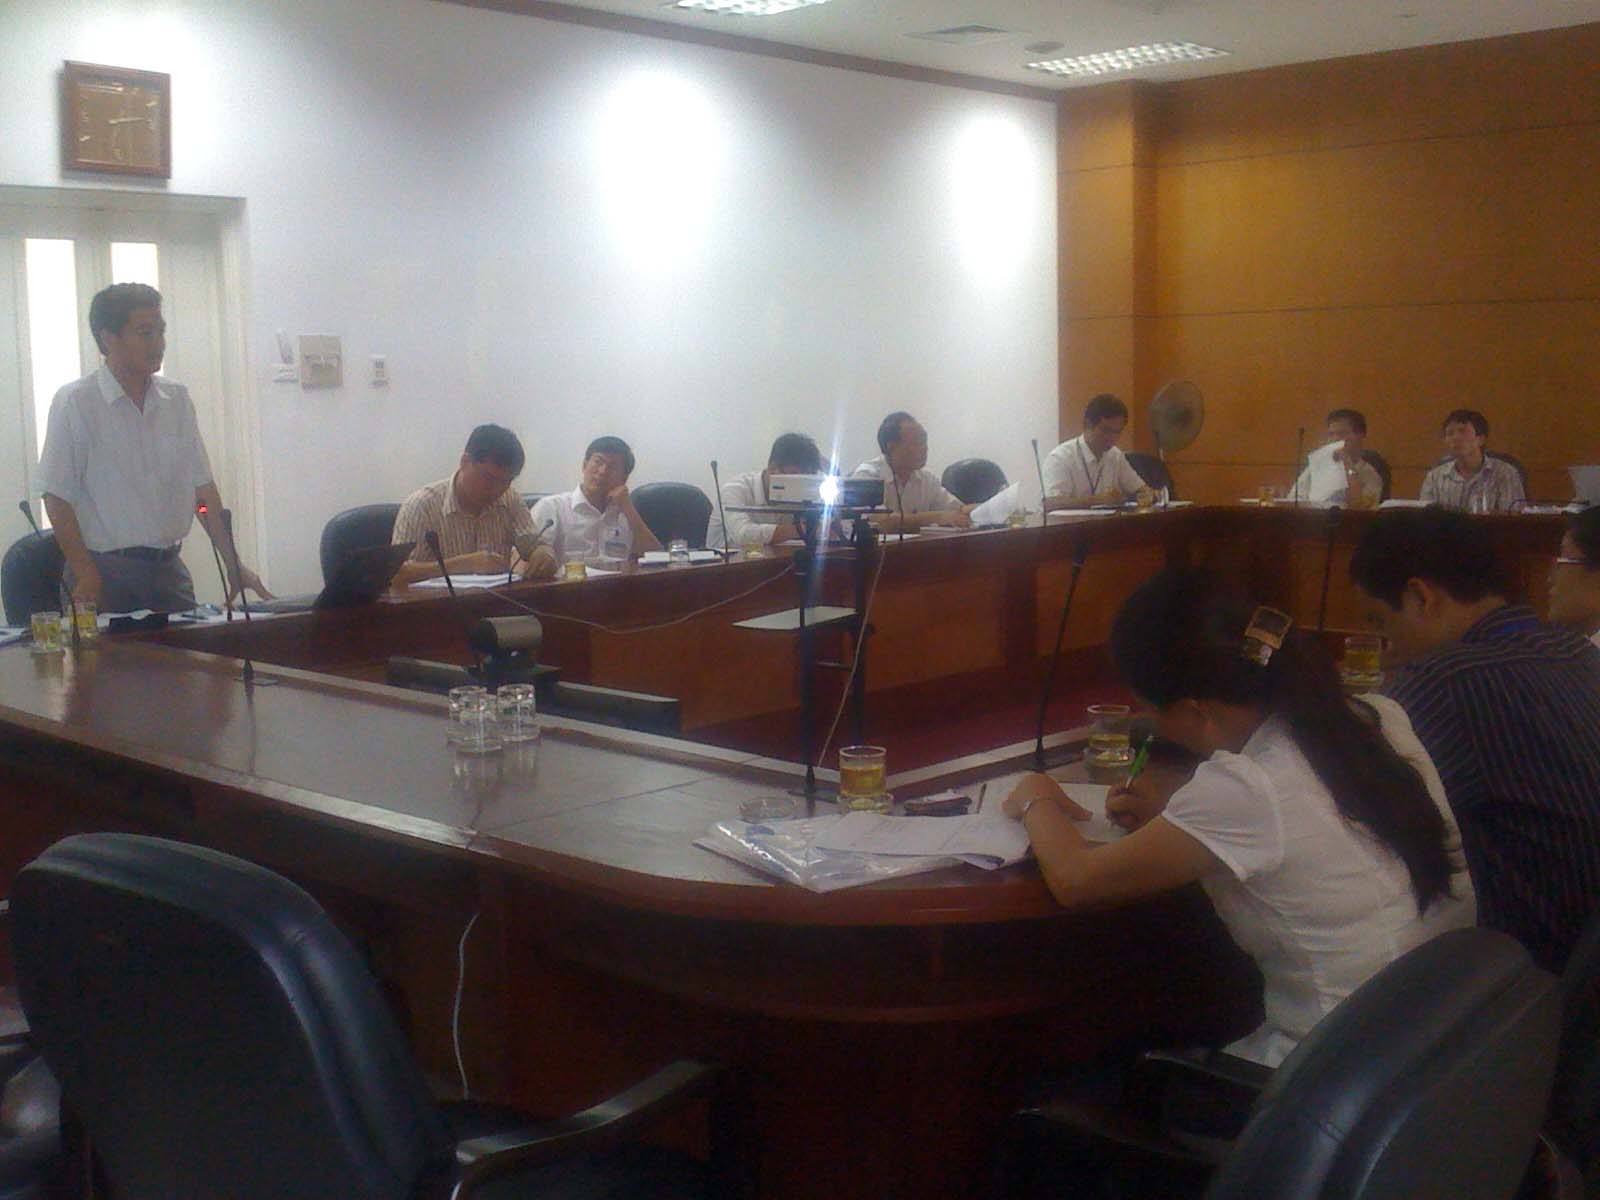 Triển khai tập huấn Hệ thống quản lý chất lượng theo tiêu chuẩn  TCVN ISO 9001:2008 tại UBND quận Long Biên – Hà Nội